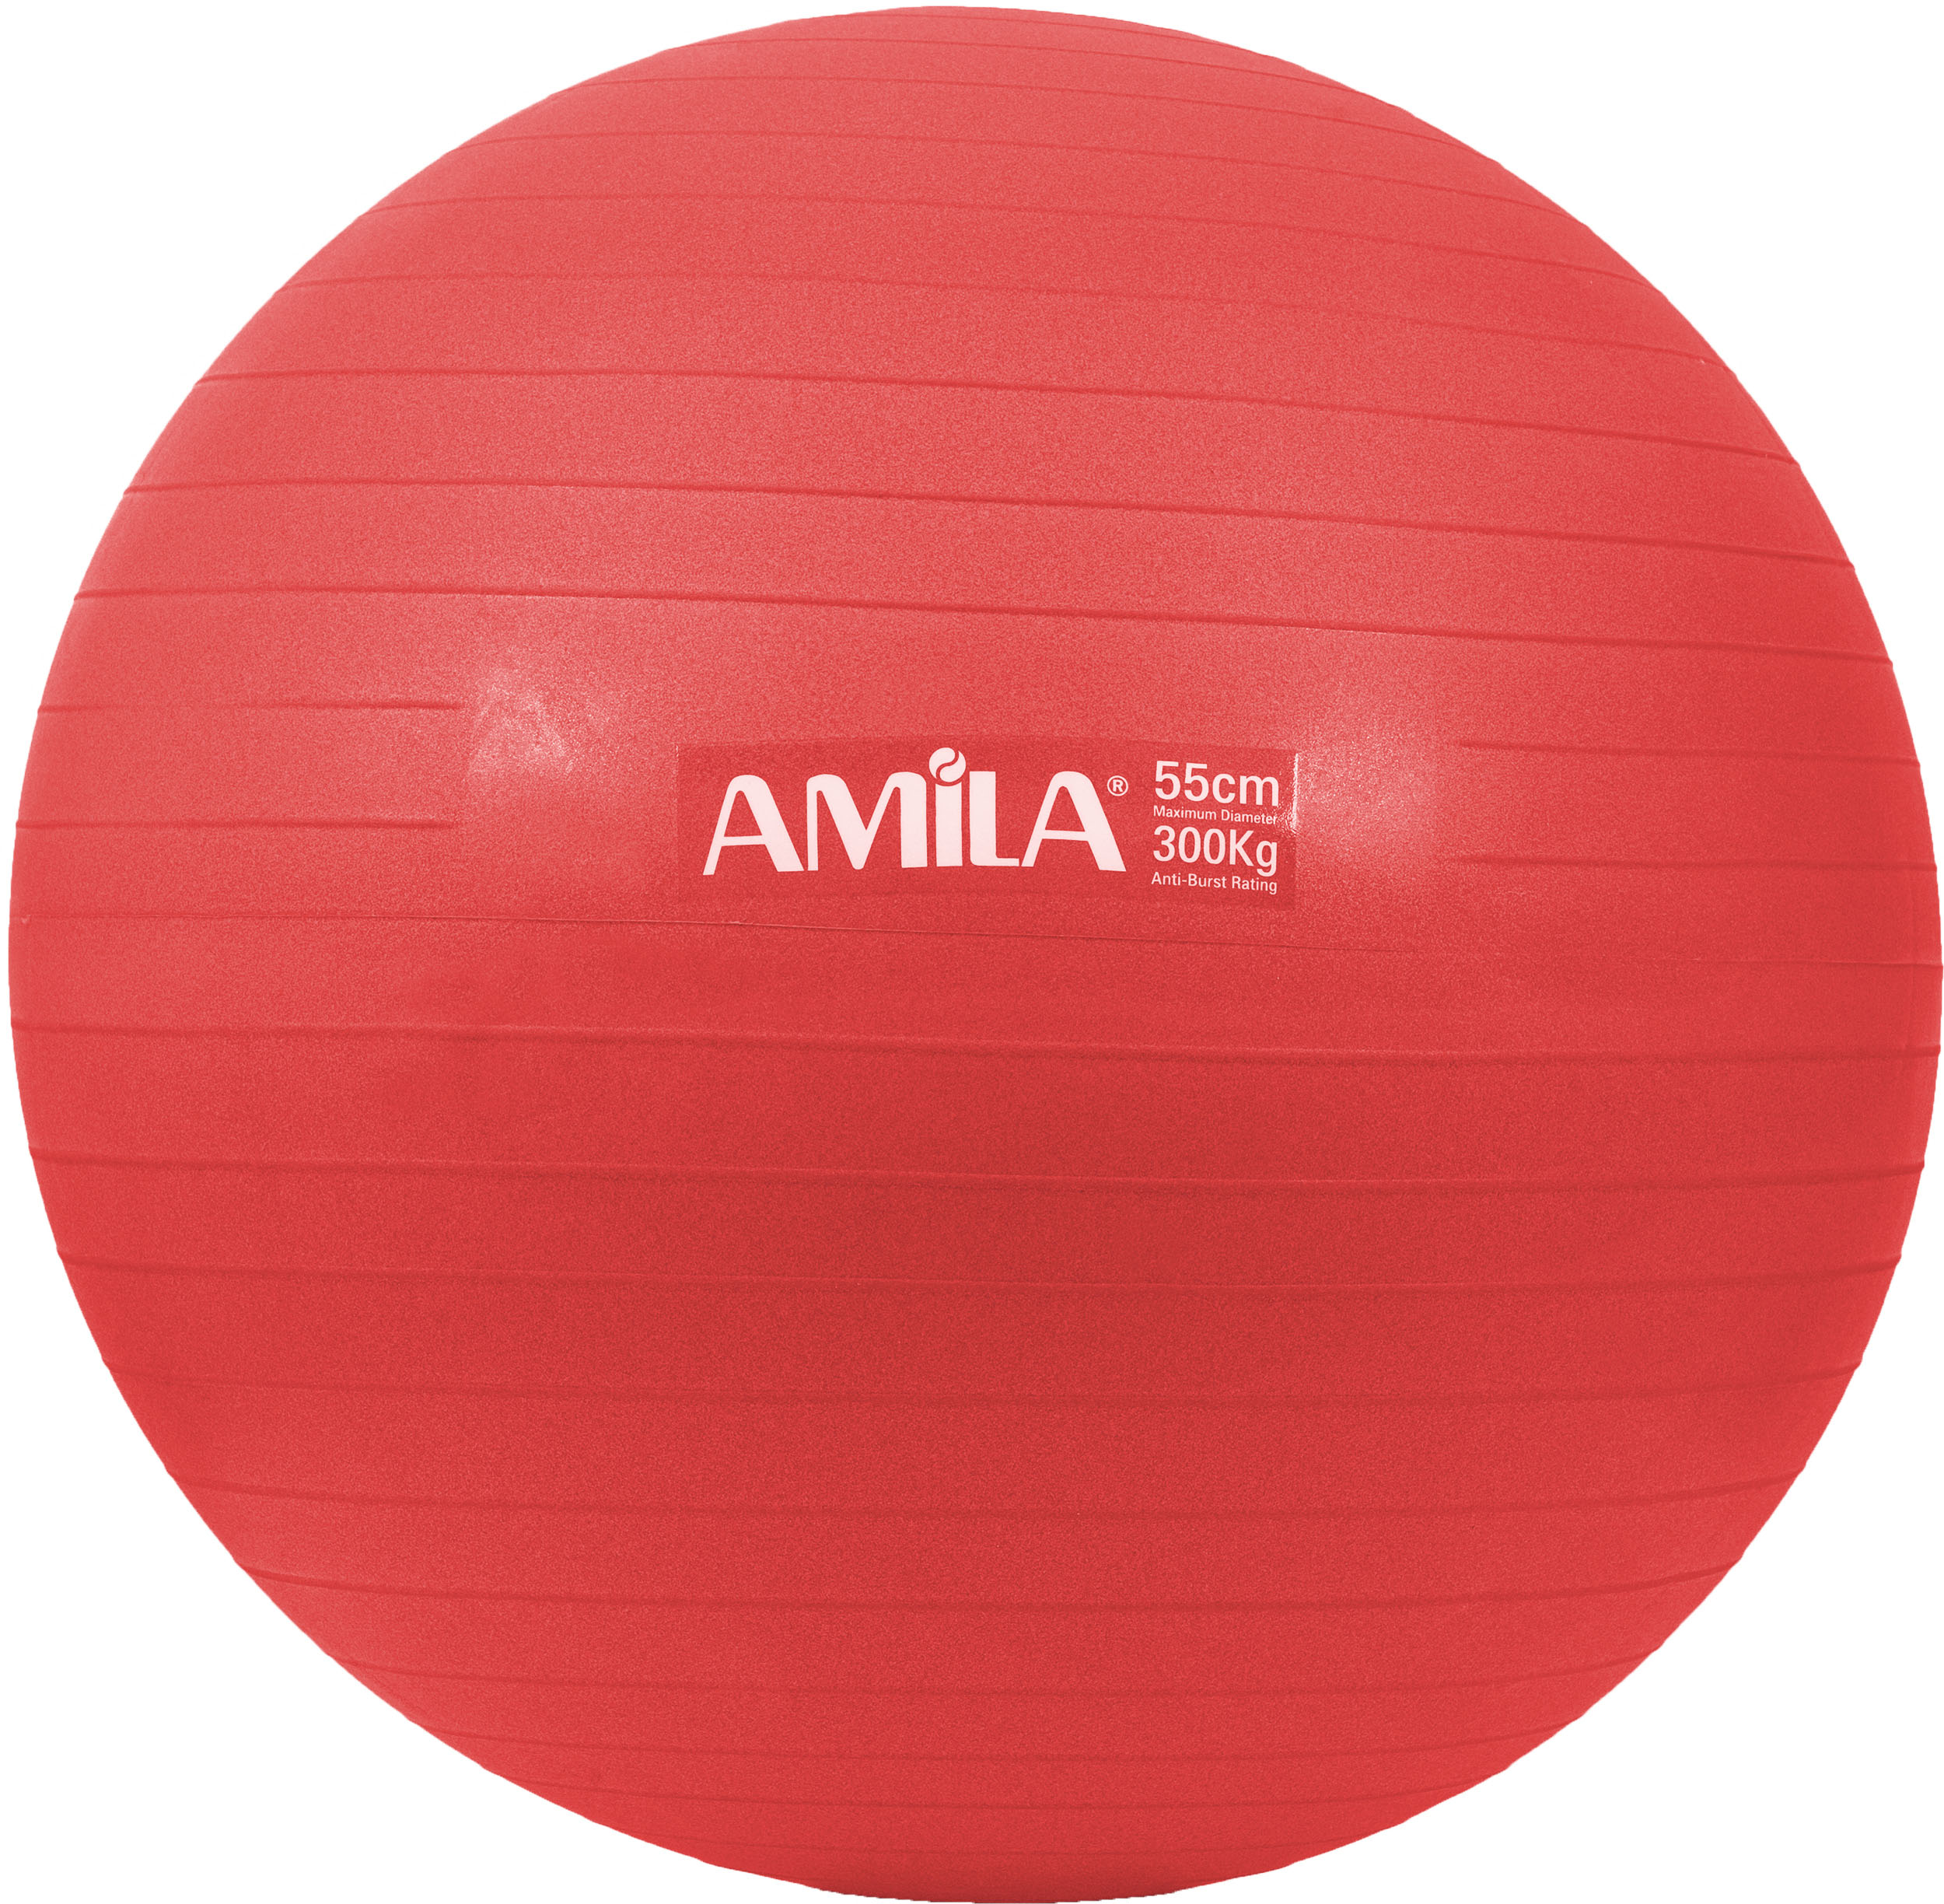 Amila Μπαλα Γυμναστικης 55Cm 1000Gr Bulk - Κοκκινη (48440)